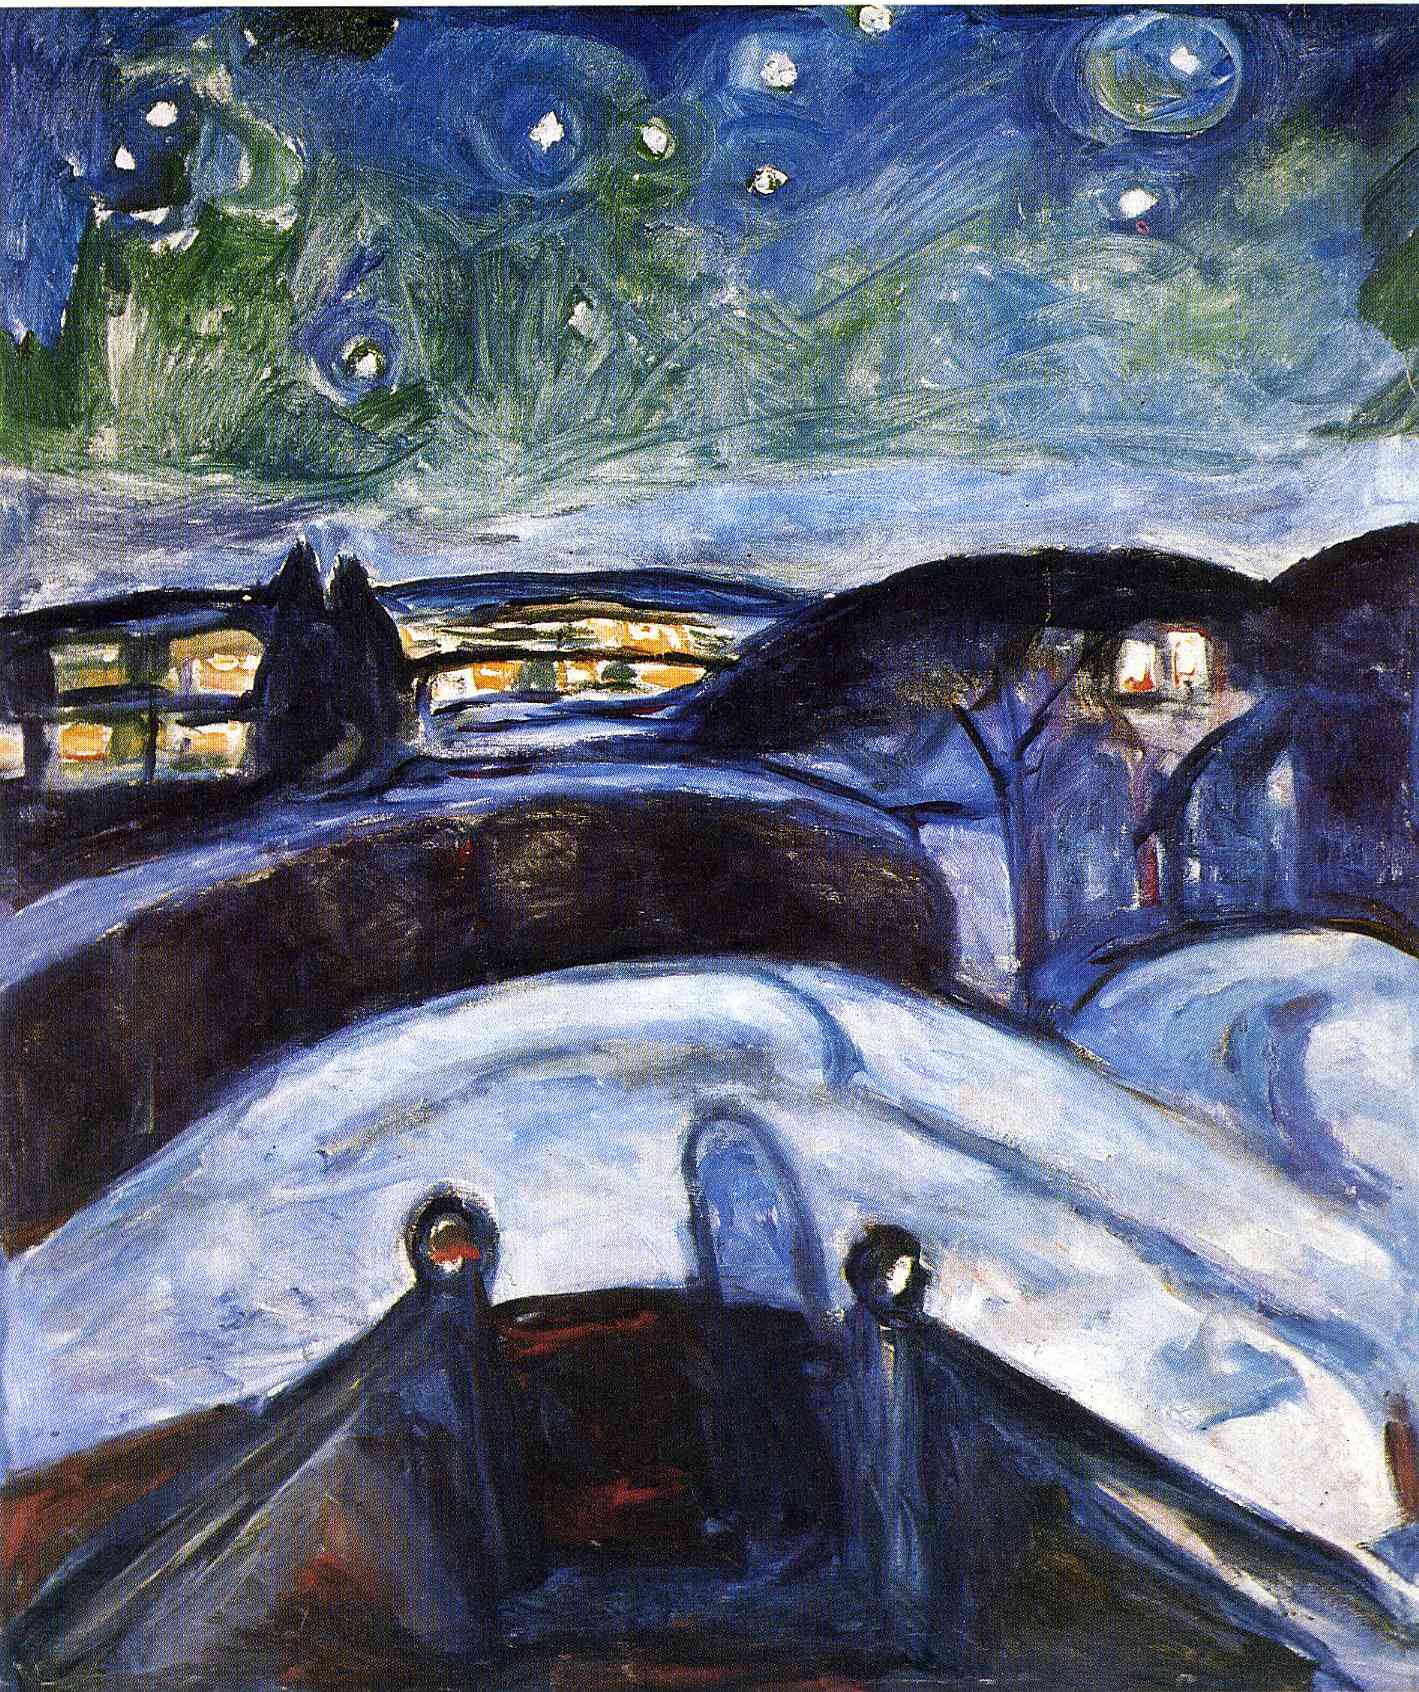 星夜 by Edvard Munch - 1922-1924 - 119 x 140 cm 